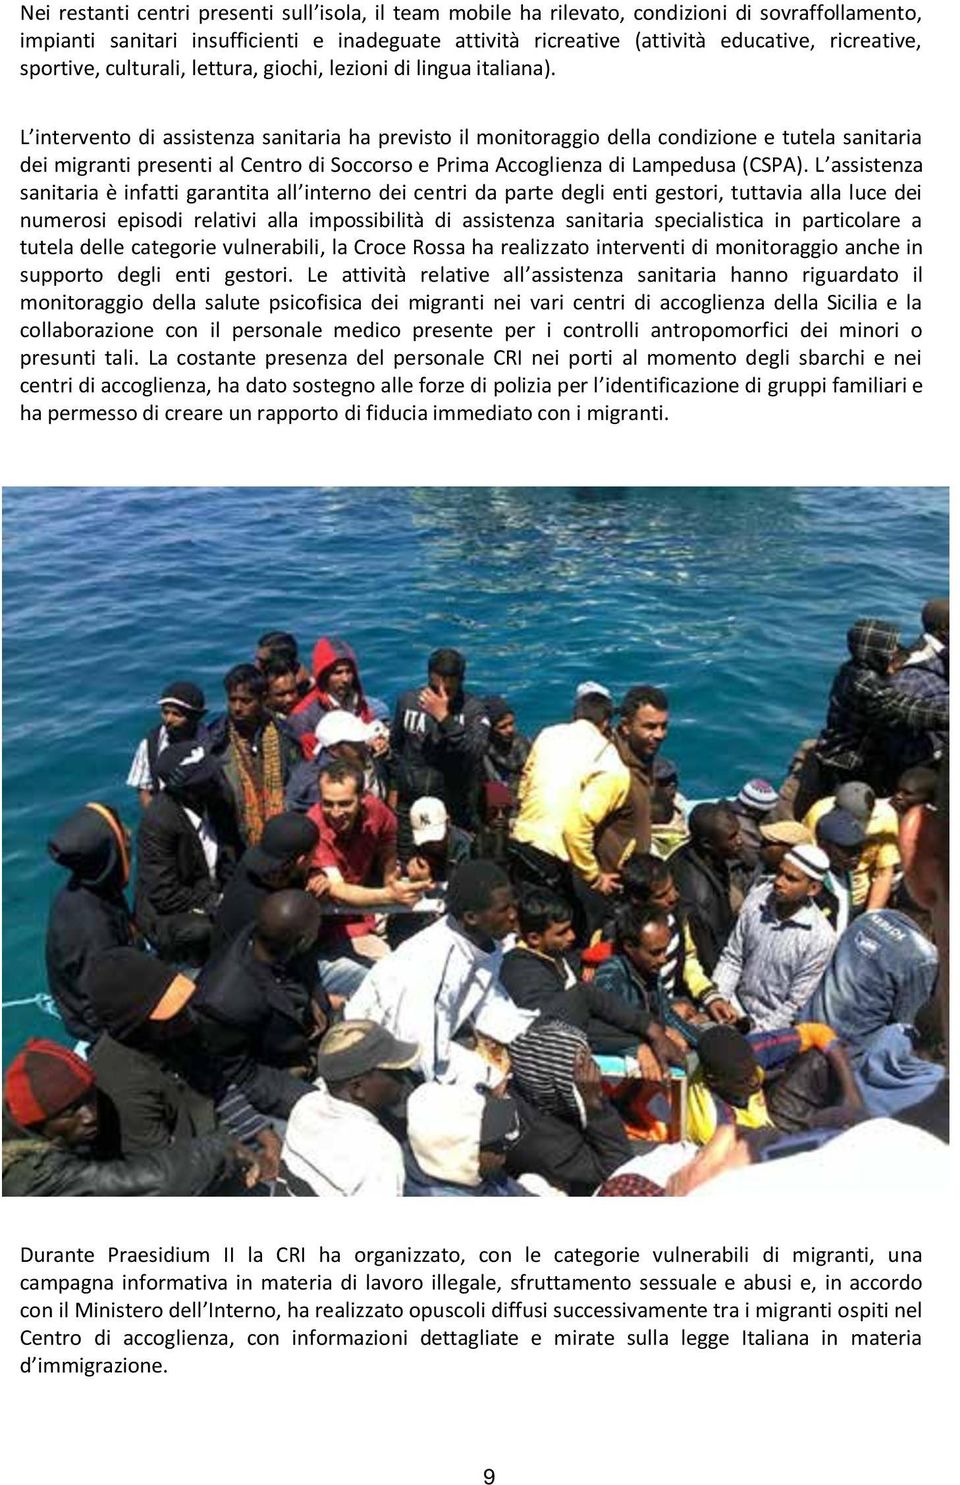 L intervento di assistenza sanitaria ha previsto il monitoraggio della condizione e tutela sanitaria dei migranti presenti al Centro di Soccorso e Prima Accoglienza di Lampedusa (CSPA).